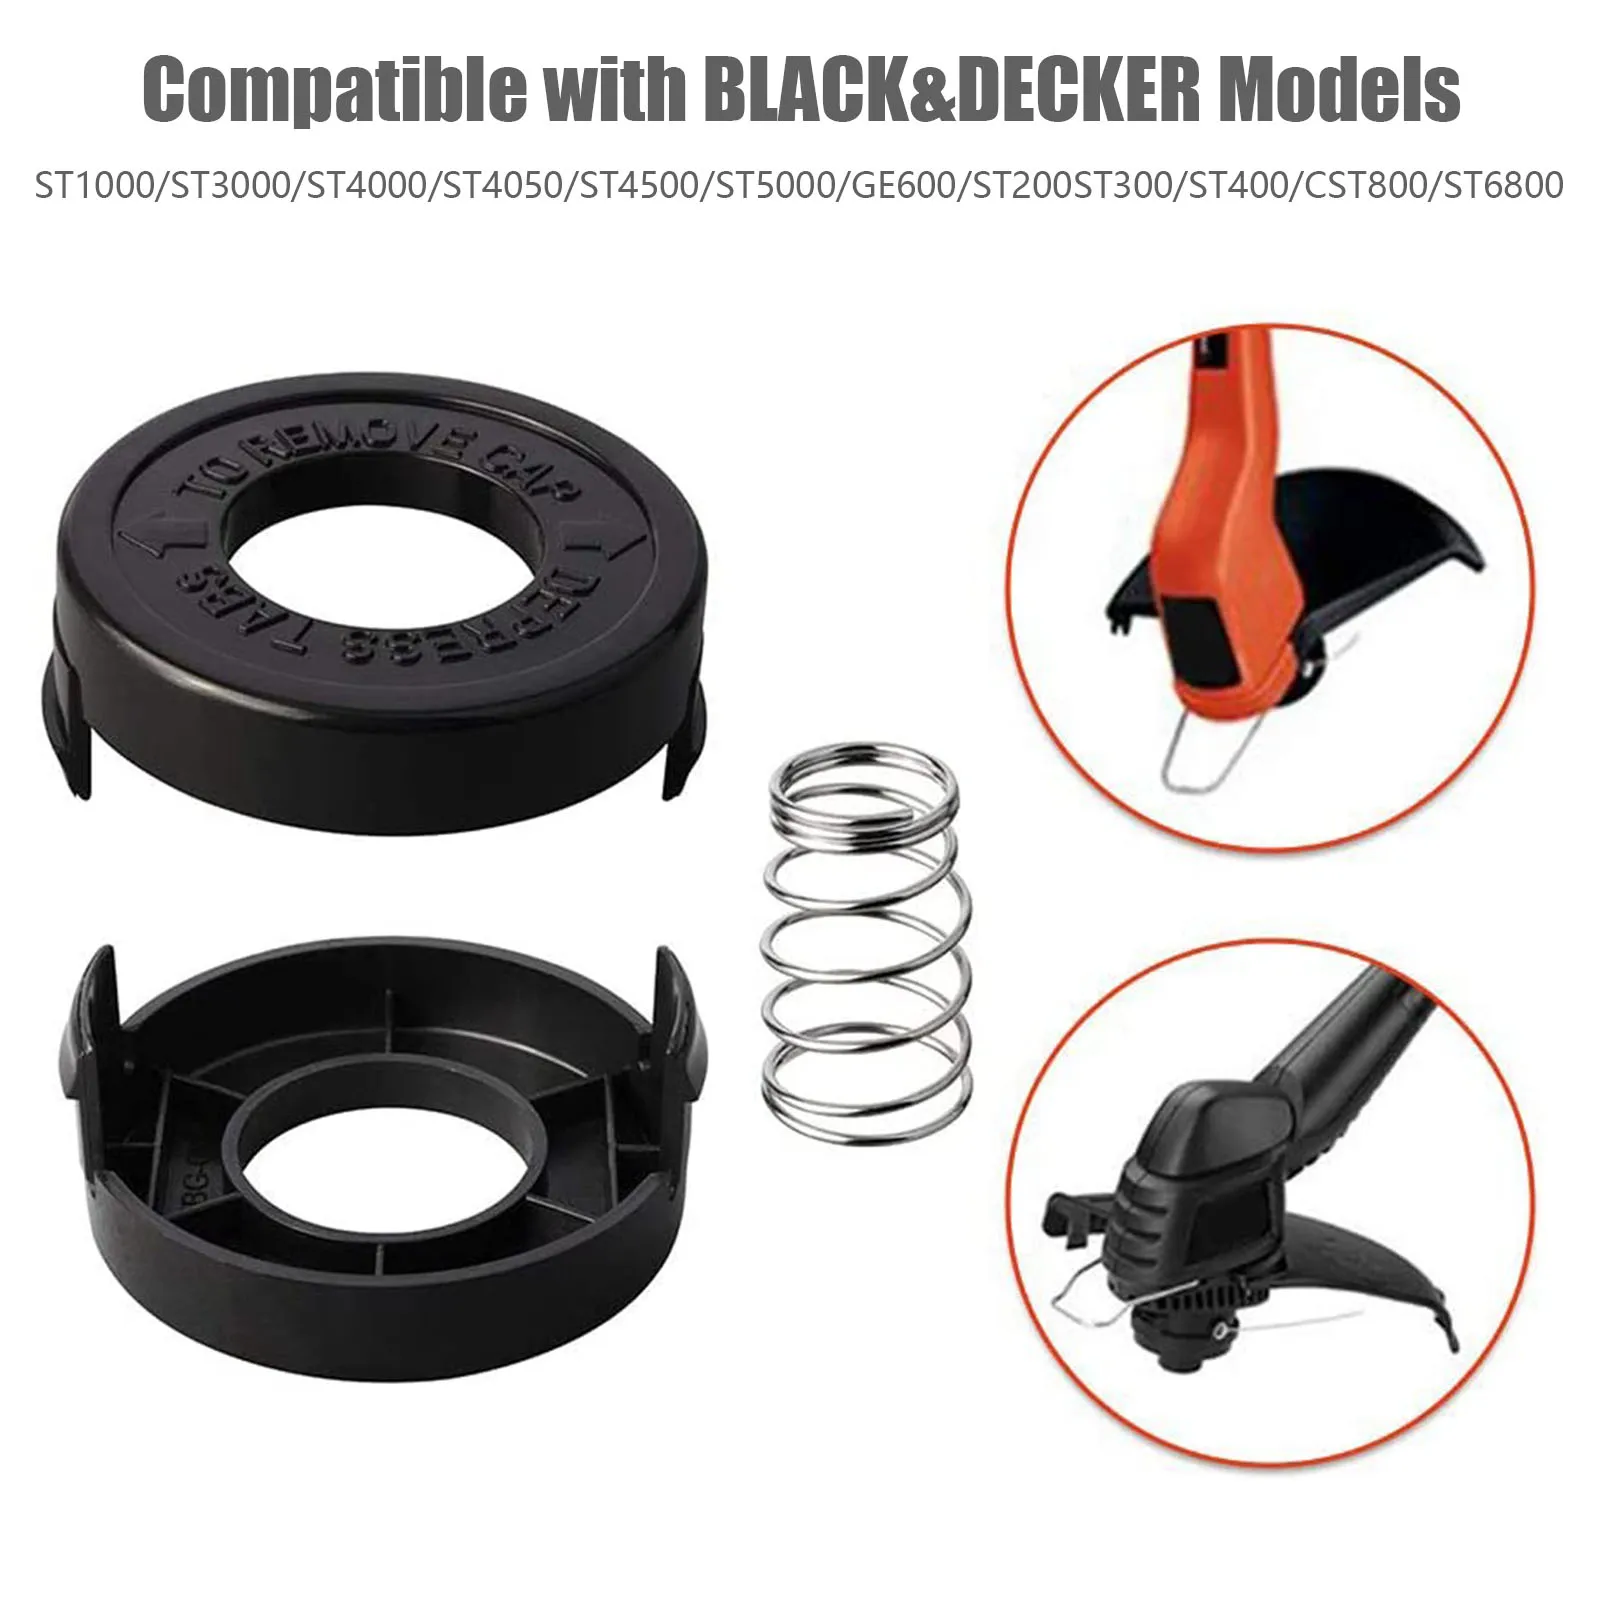 Bump Cap Testina a filo Bobina Kit di Ricostruzione Per Black Decker ST4500 682378-02 Cappuccio Modello di Decespugliatore Parti